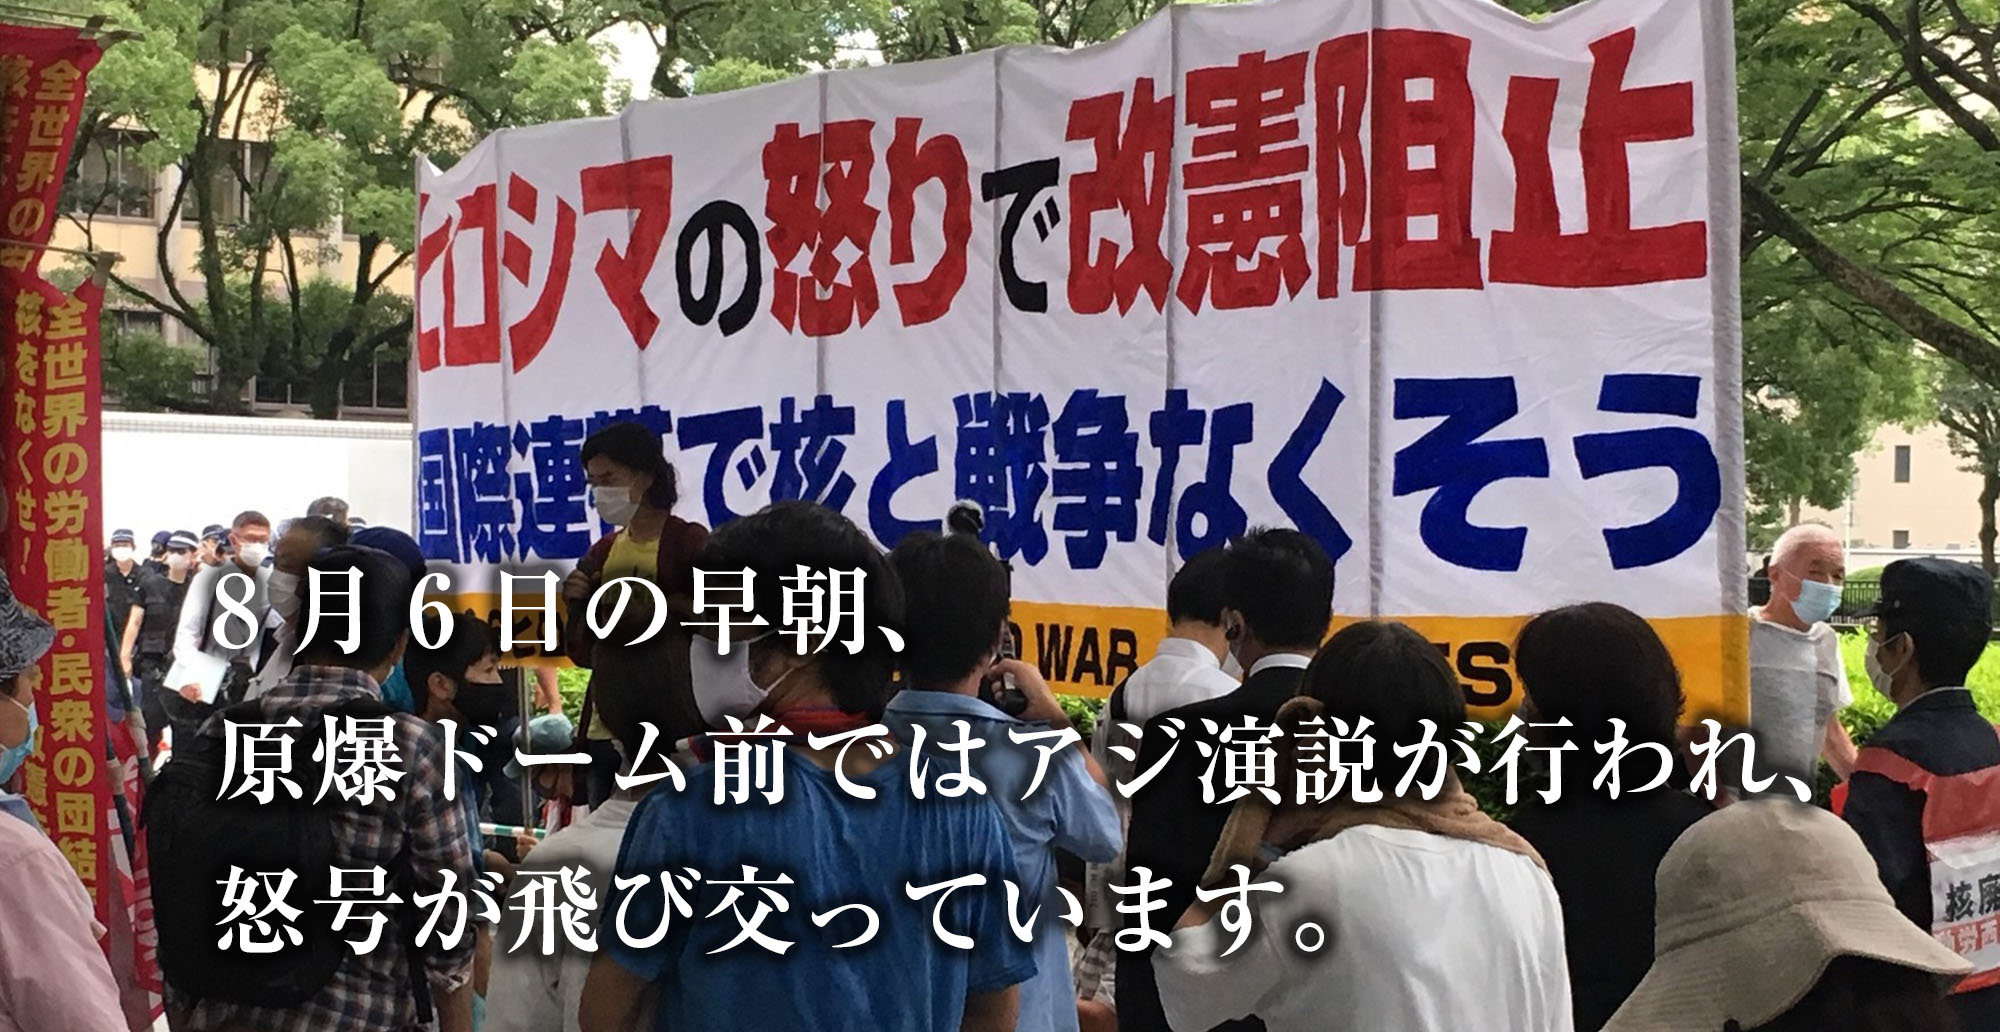 静かな8月6日を願う広島市民の会